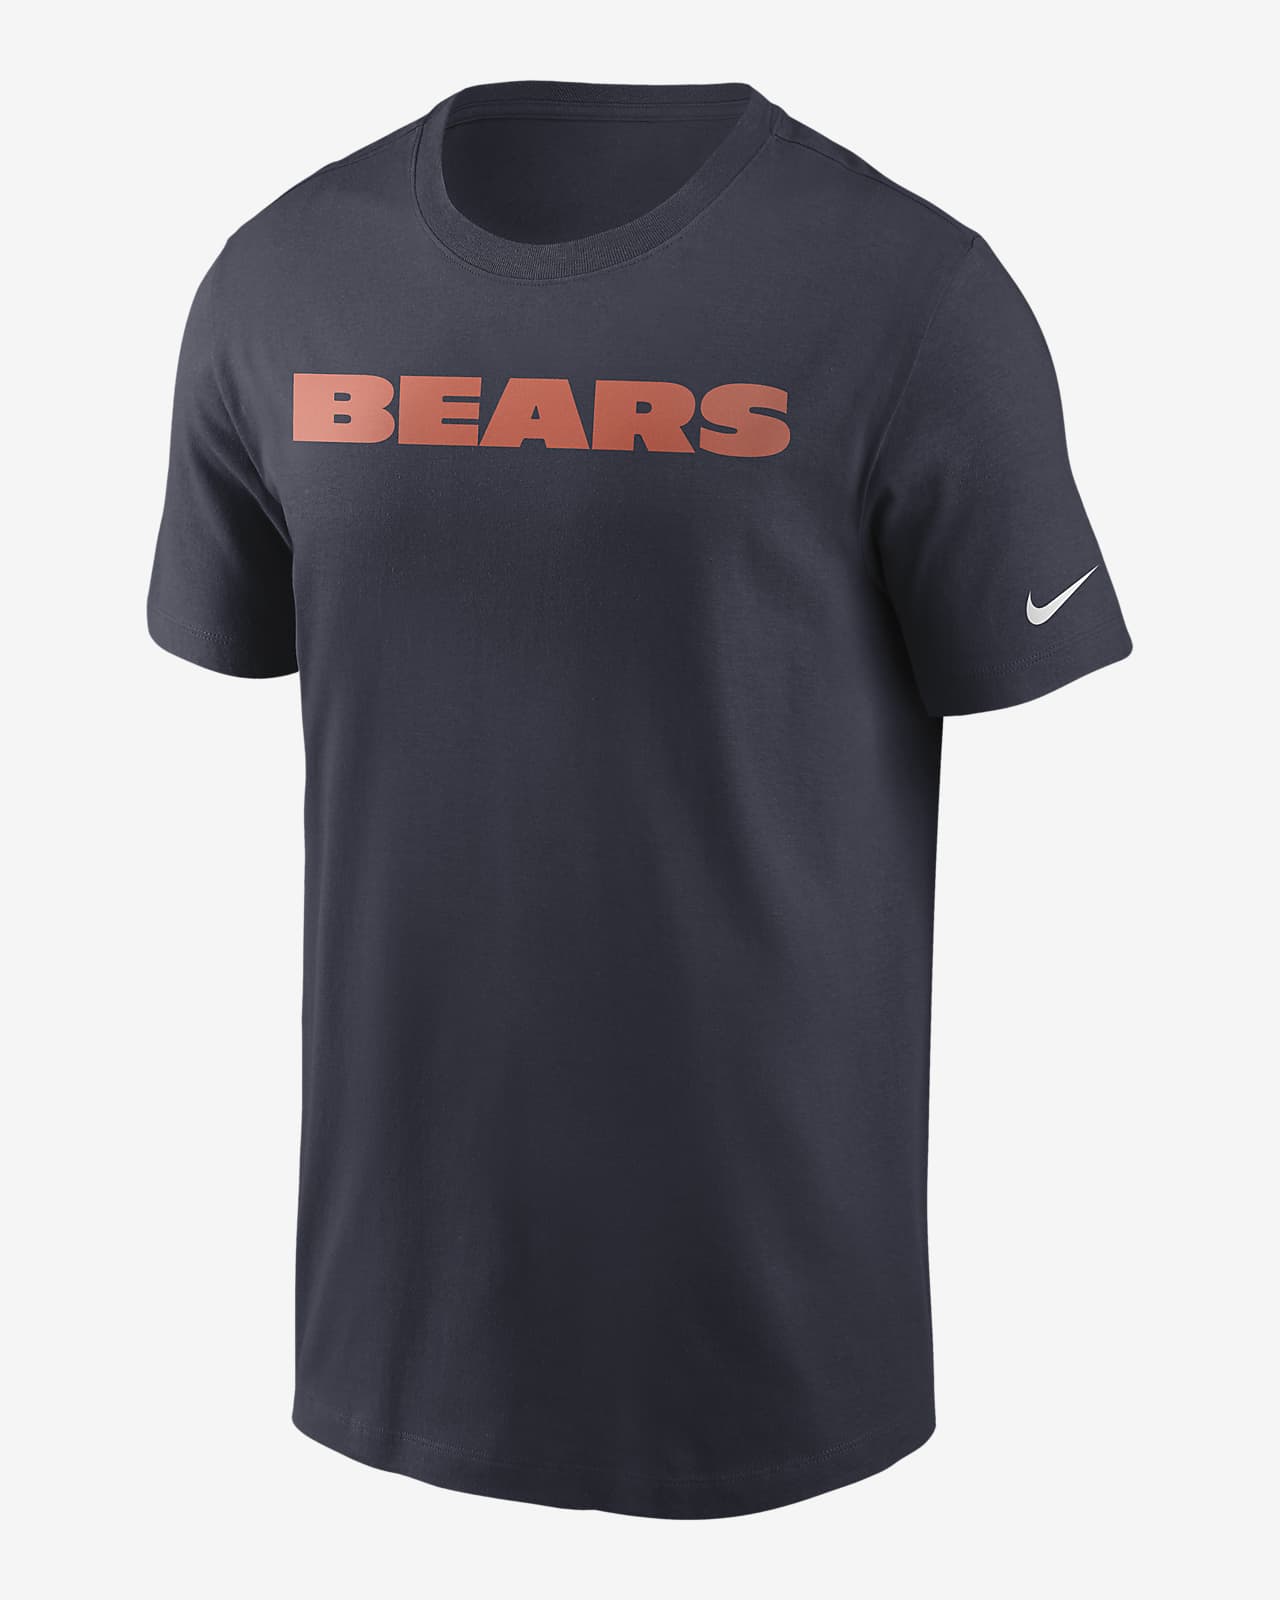 Nike (NFL Bears) Men's T-Shirt. Nike.com